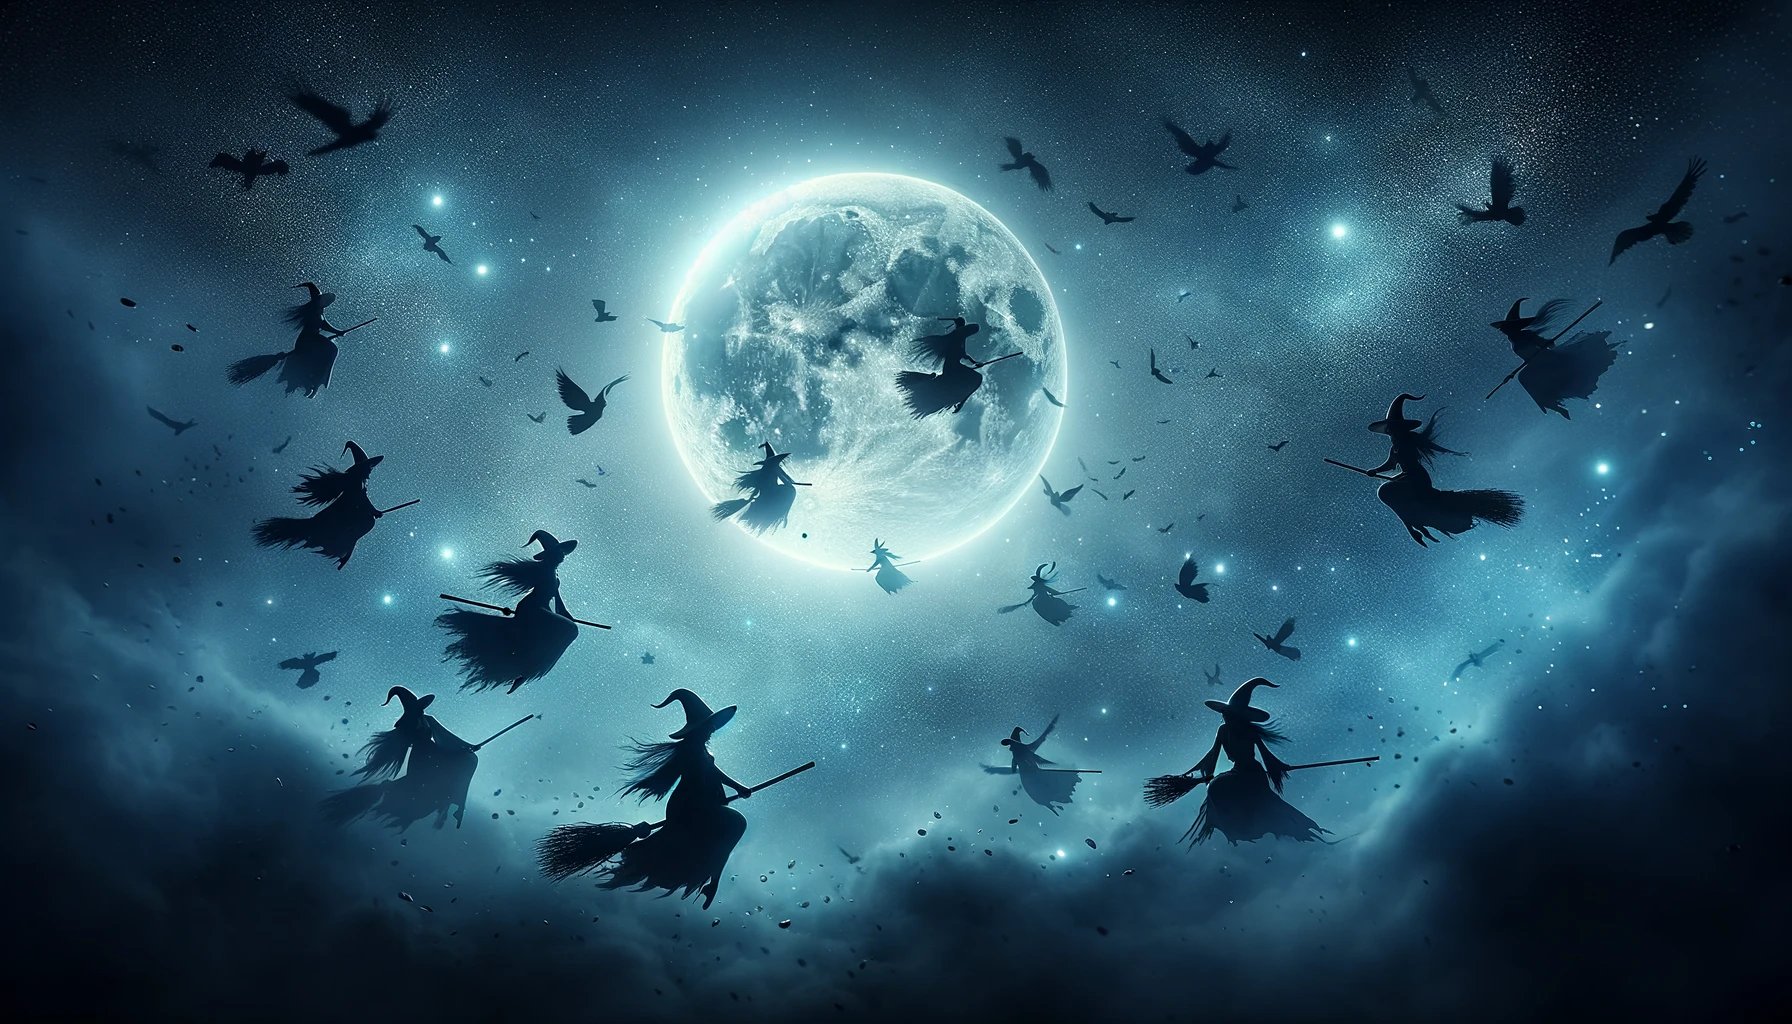 interpretación de sueños con brujas en vuelo